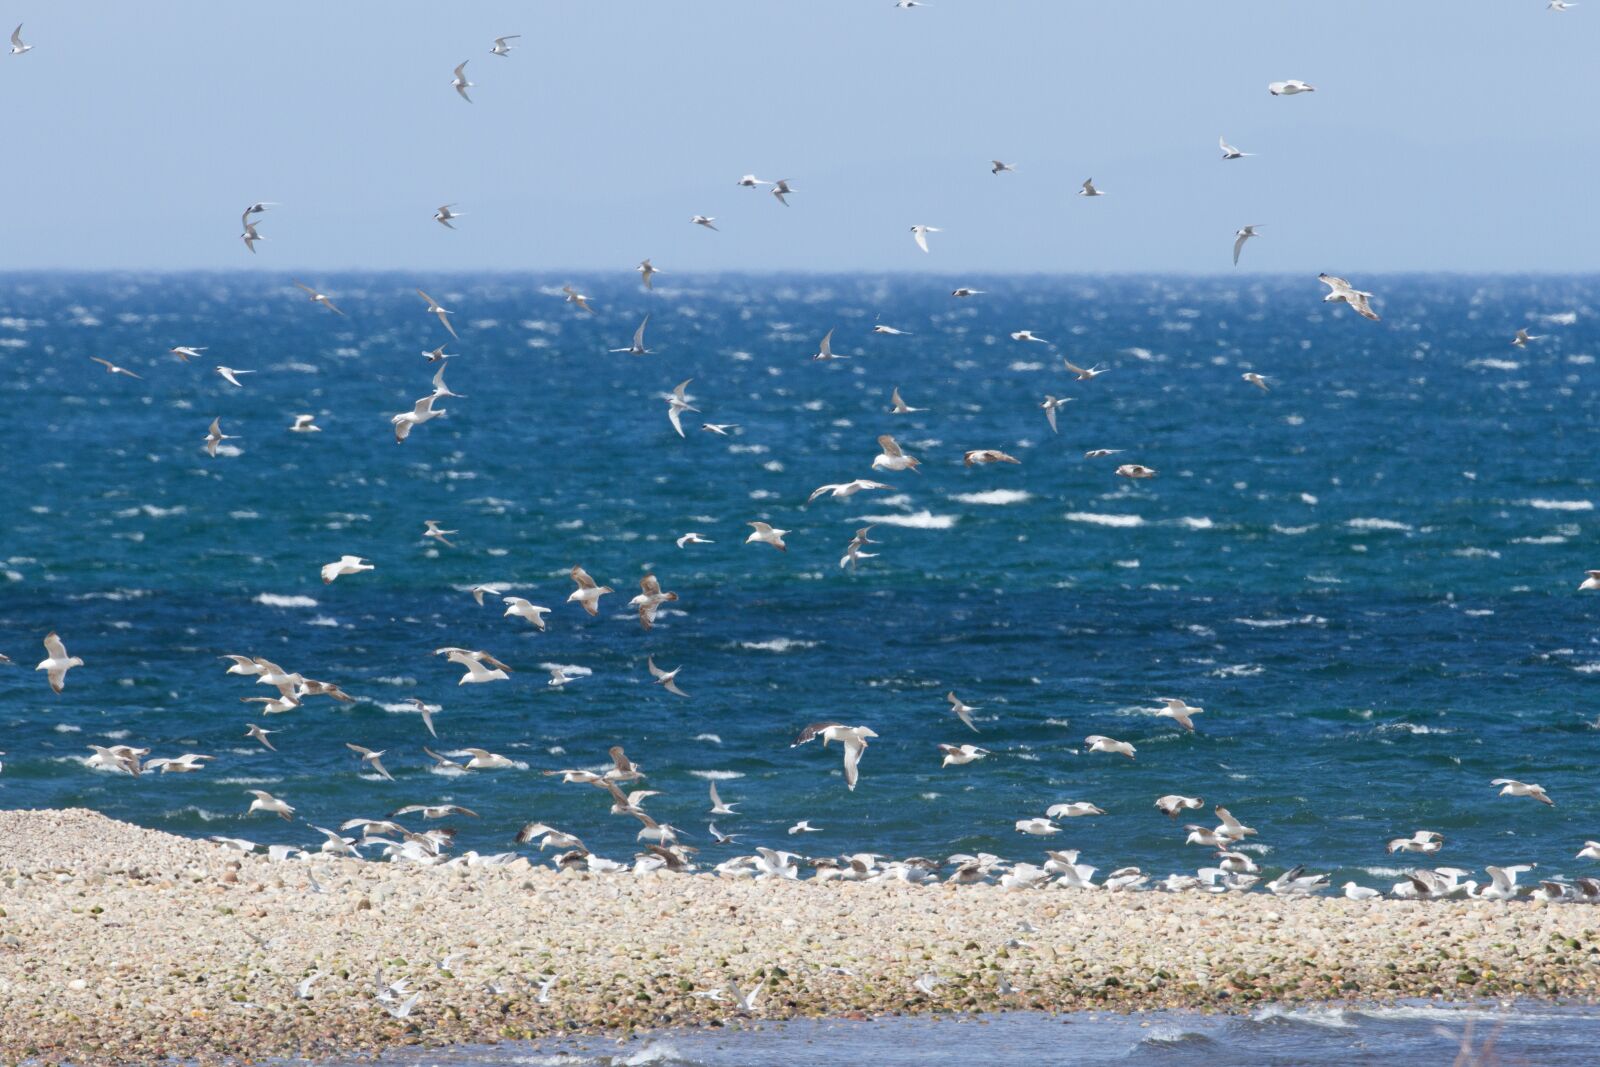 Canon EOS 7D sample photo. Ocean, birds, nature photography